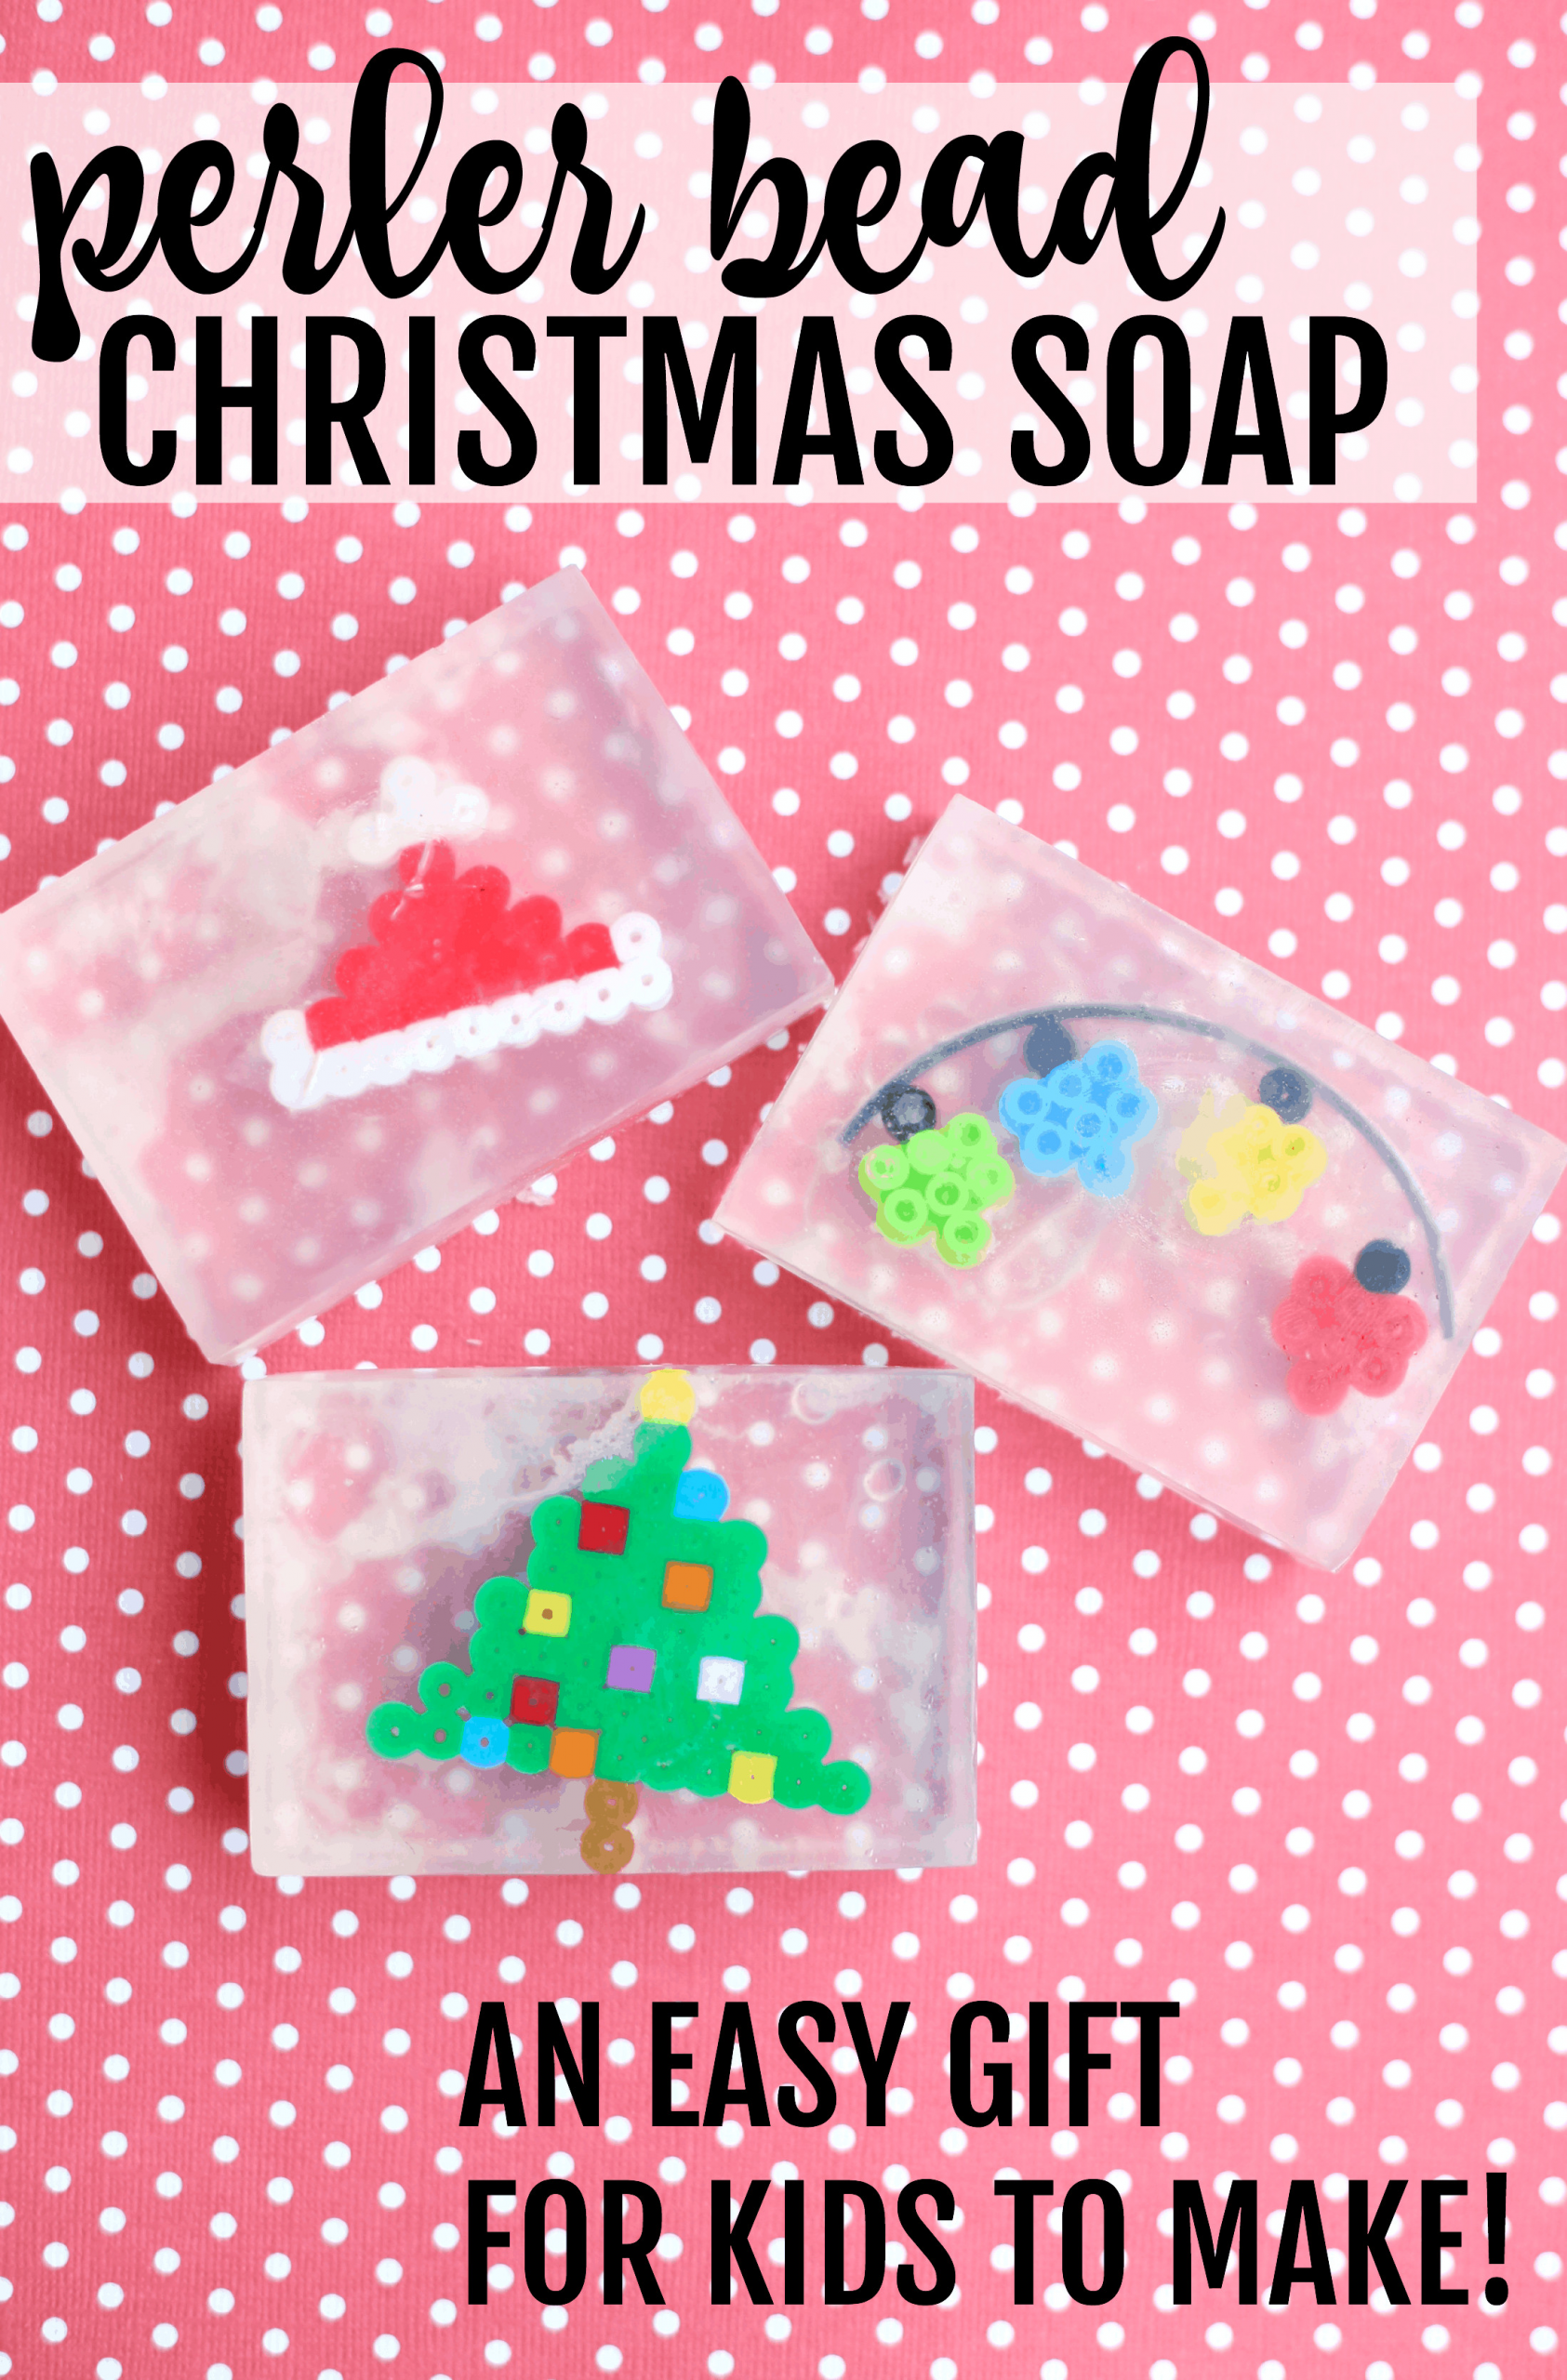 Christmas Gift Ideas For Kids To Make
 Perler Bead Christmas Soap Easy Gift for Kids to Make I